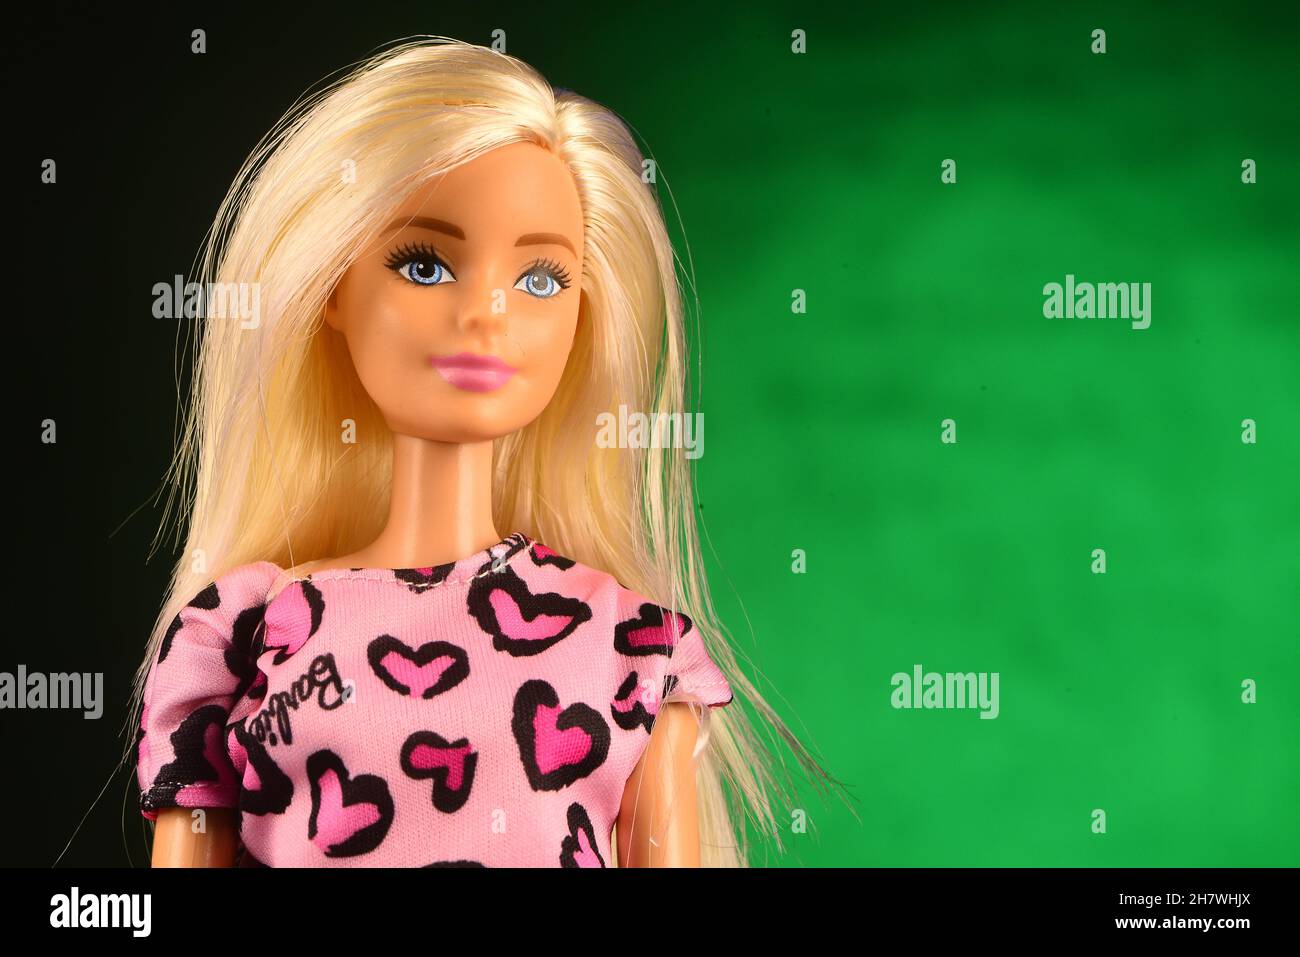 Barbie ist eine Modepuppe, die vom amerikanischen Spielzeughersteller Mattel  hergestellt wird Stockfotografie - Alamy